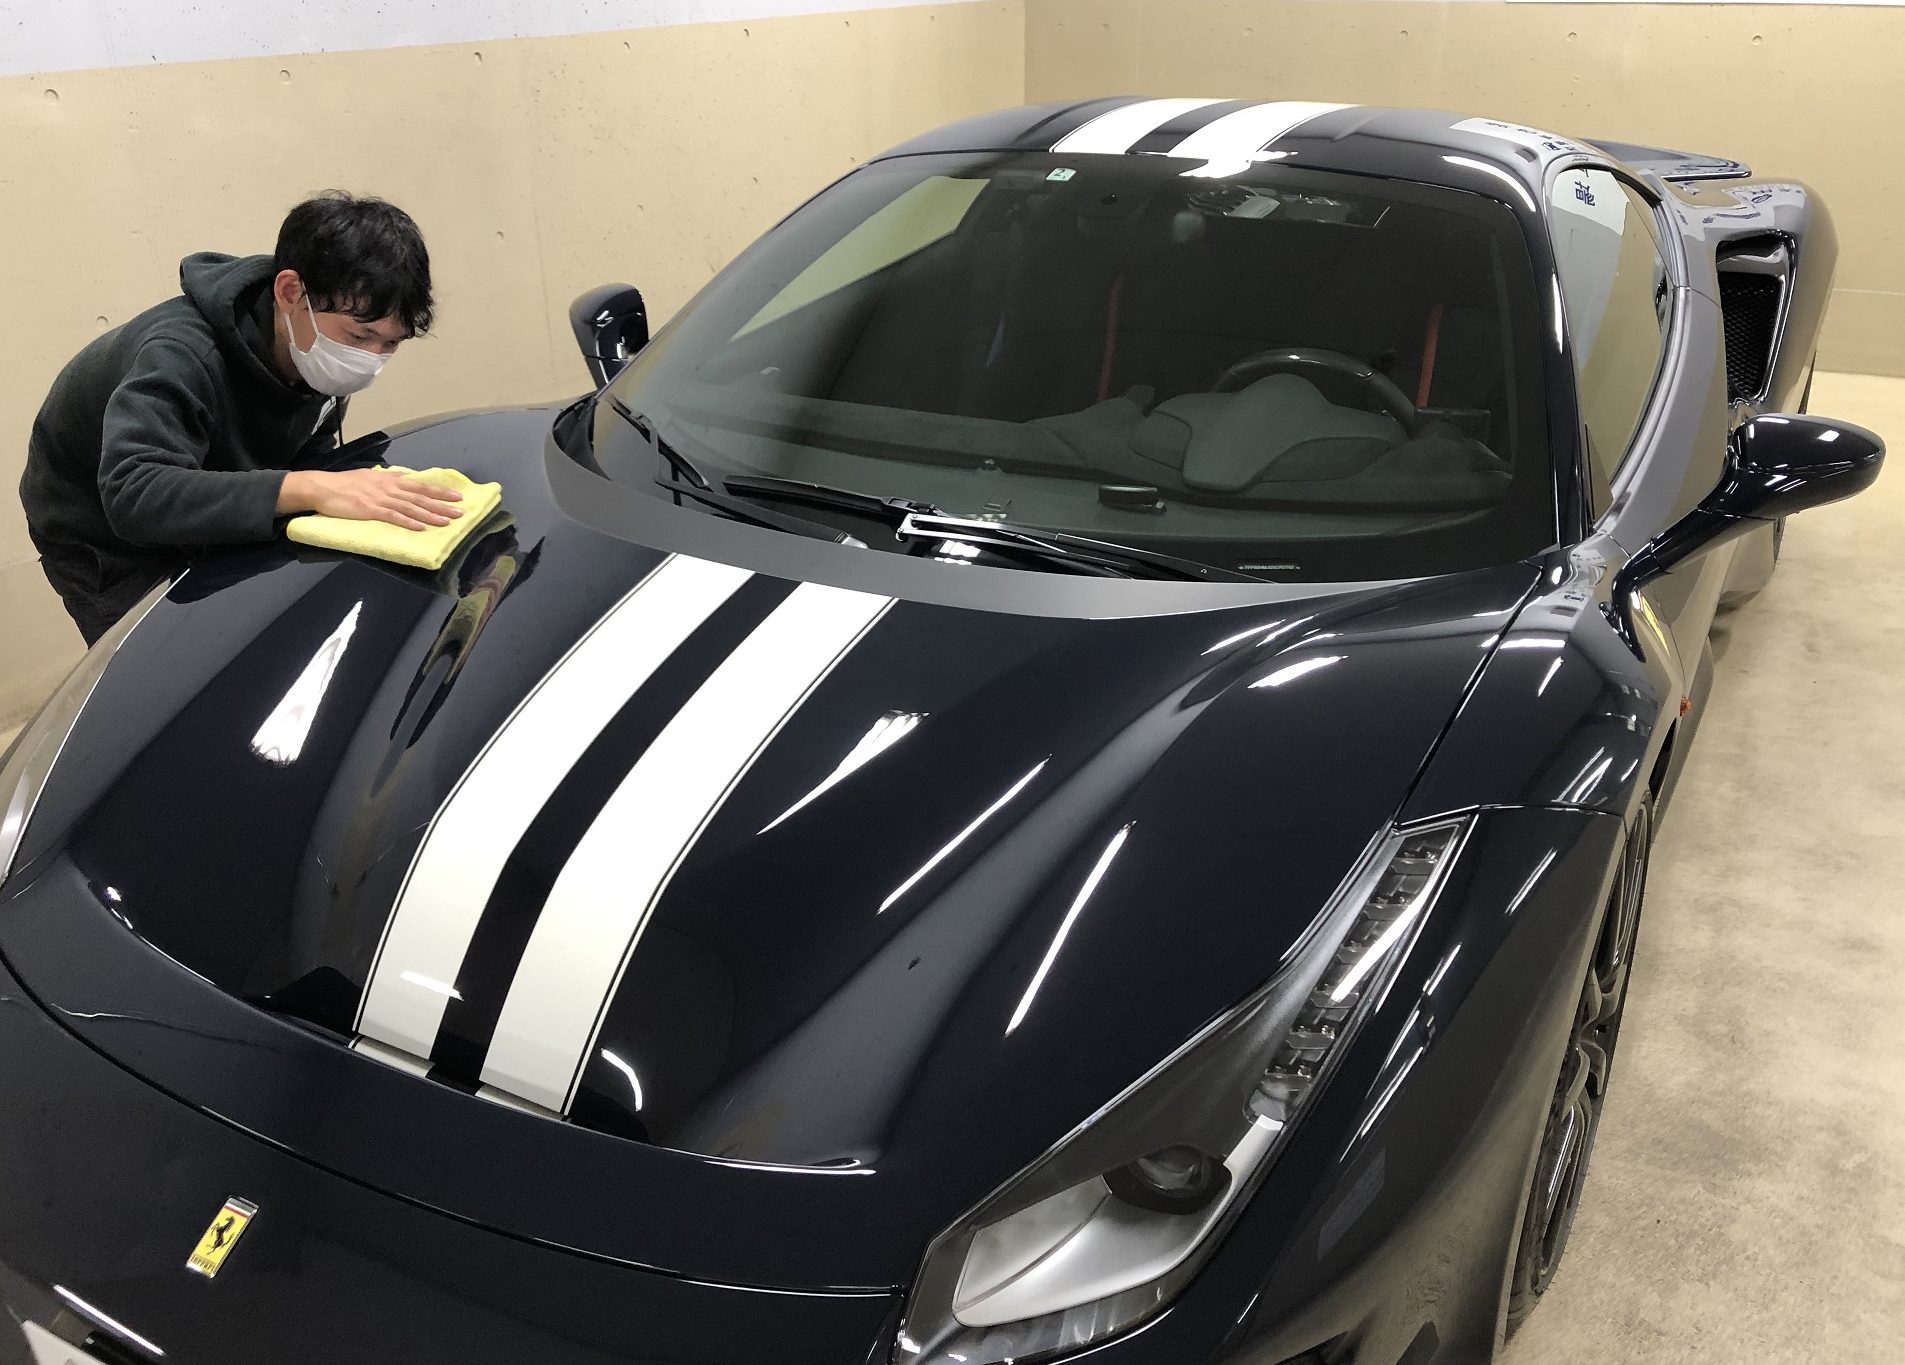 スーパーカー フェラーリ4 Pistaの出張洗車 東京の出張洗車ならcar Care Japan カーケアジャパン